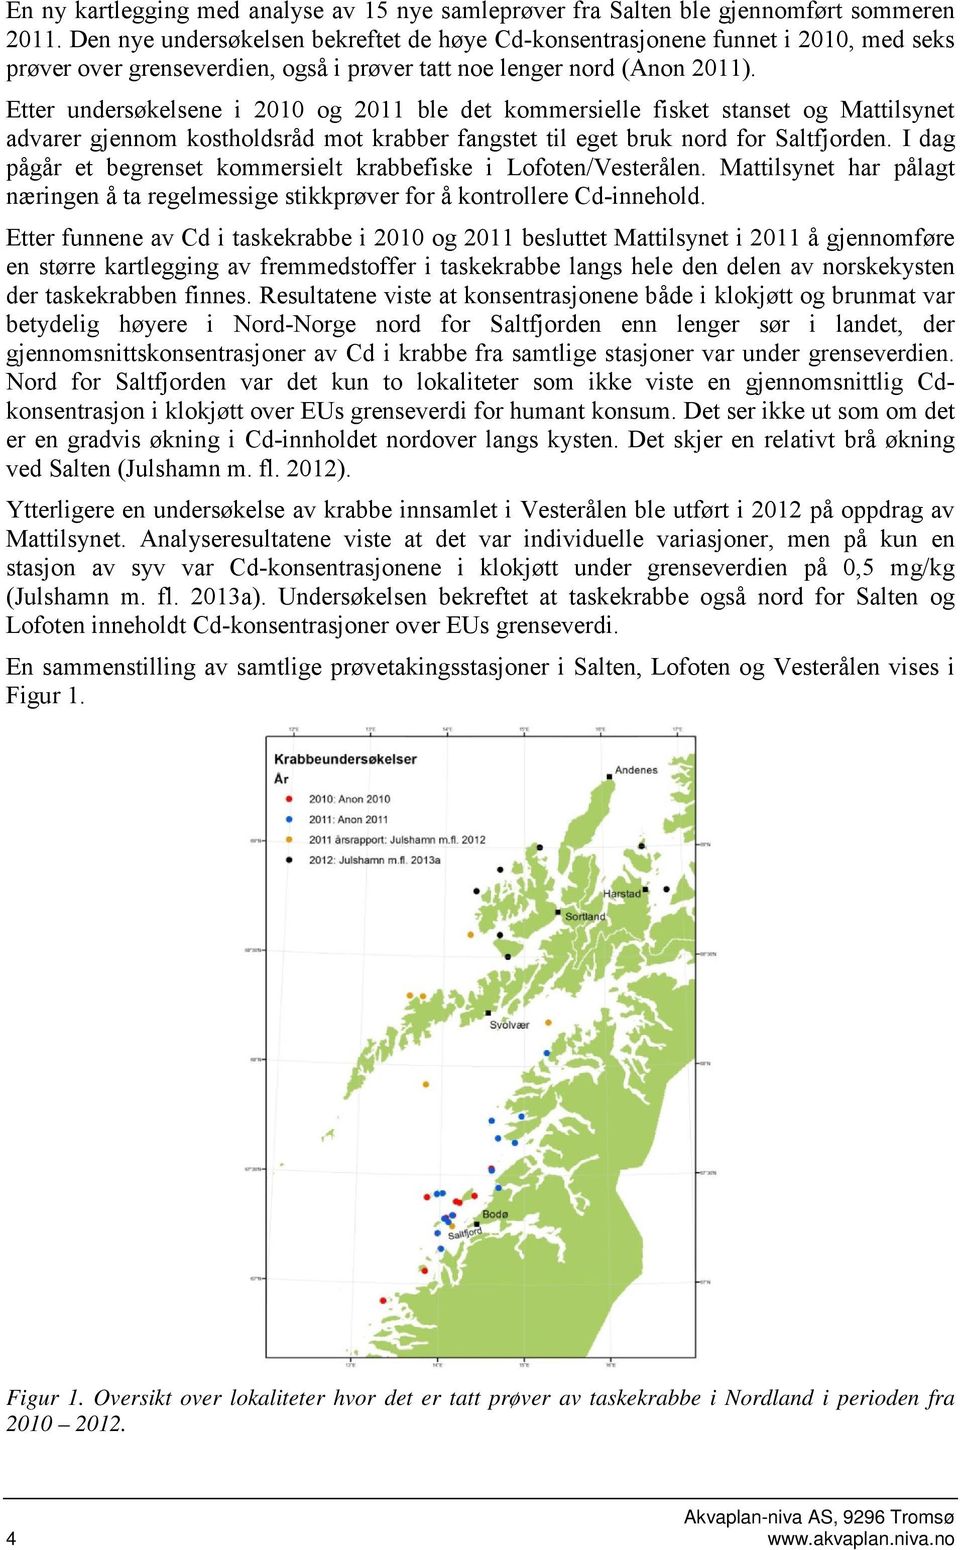 Etter undersøkelsene i 2010 og 2011 ble det kommersielle fisket stanset og Mattilsynet advarer gjennom kostholdsråd mot krabber fangstet til eget bruk nord for Saltfjorden.